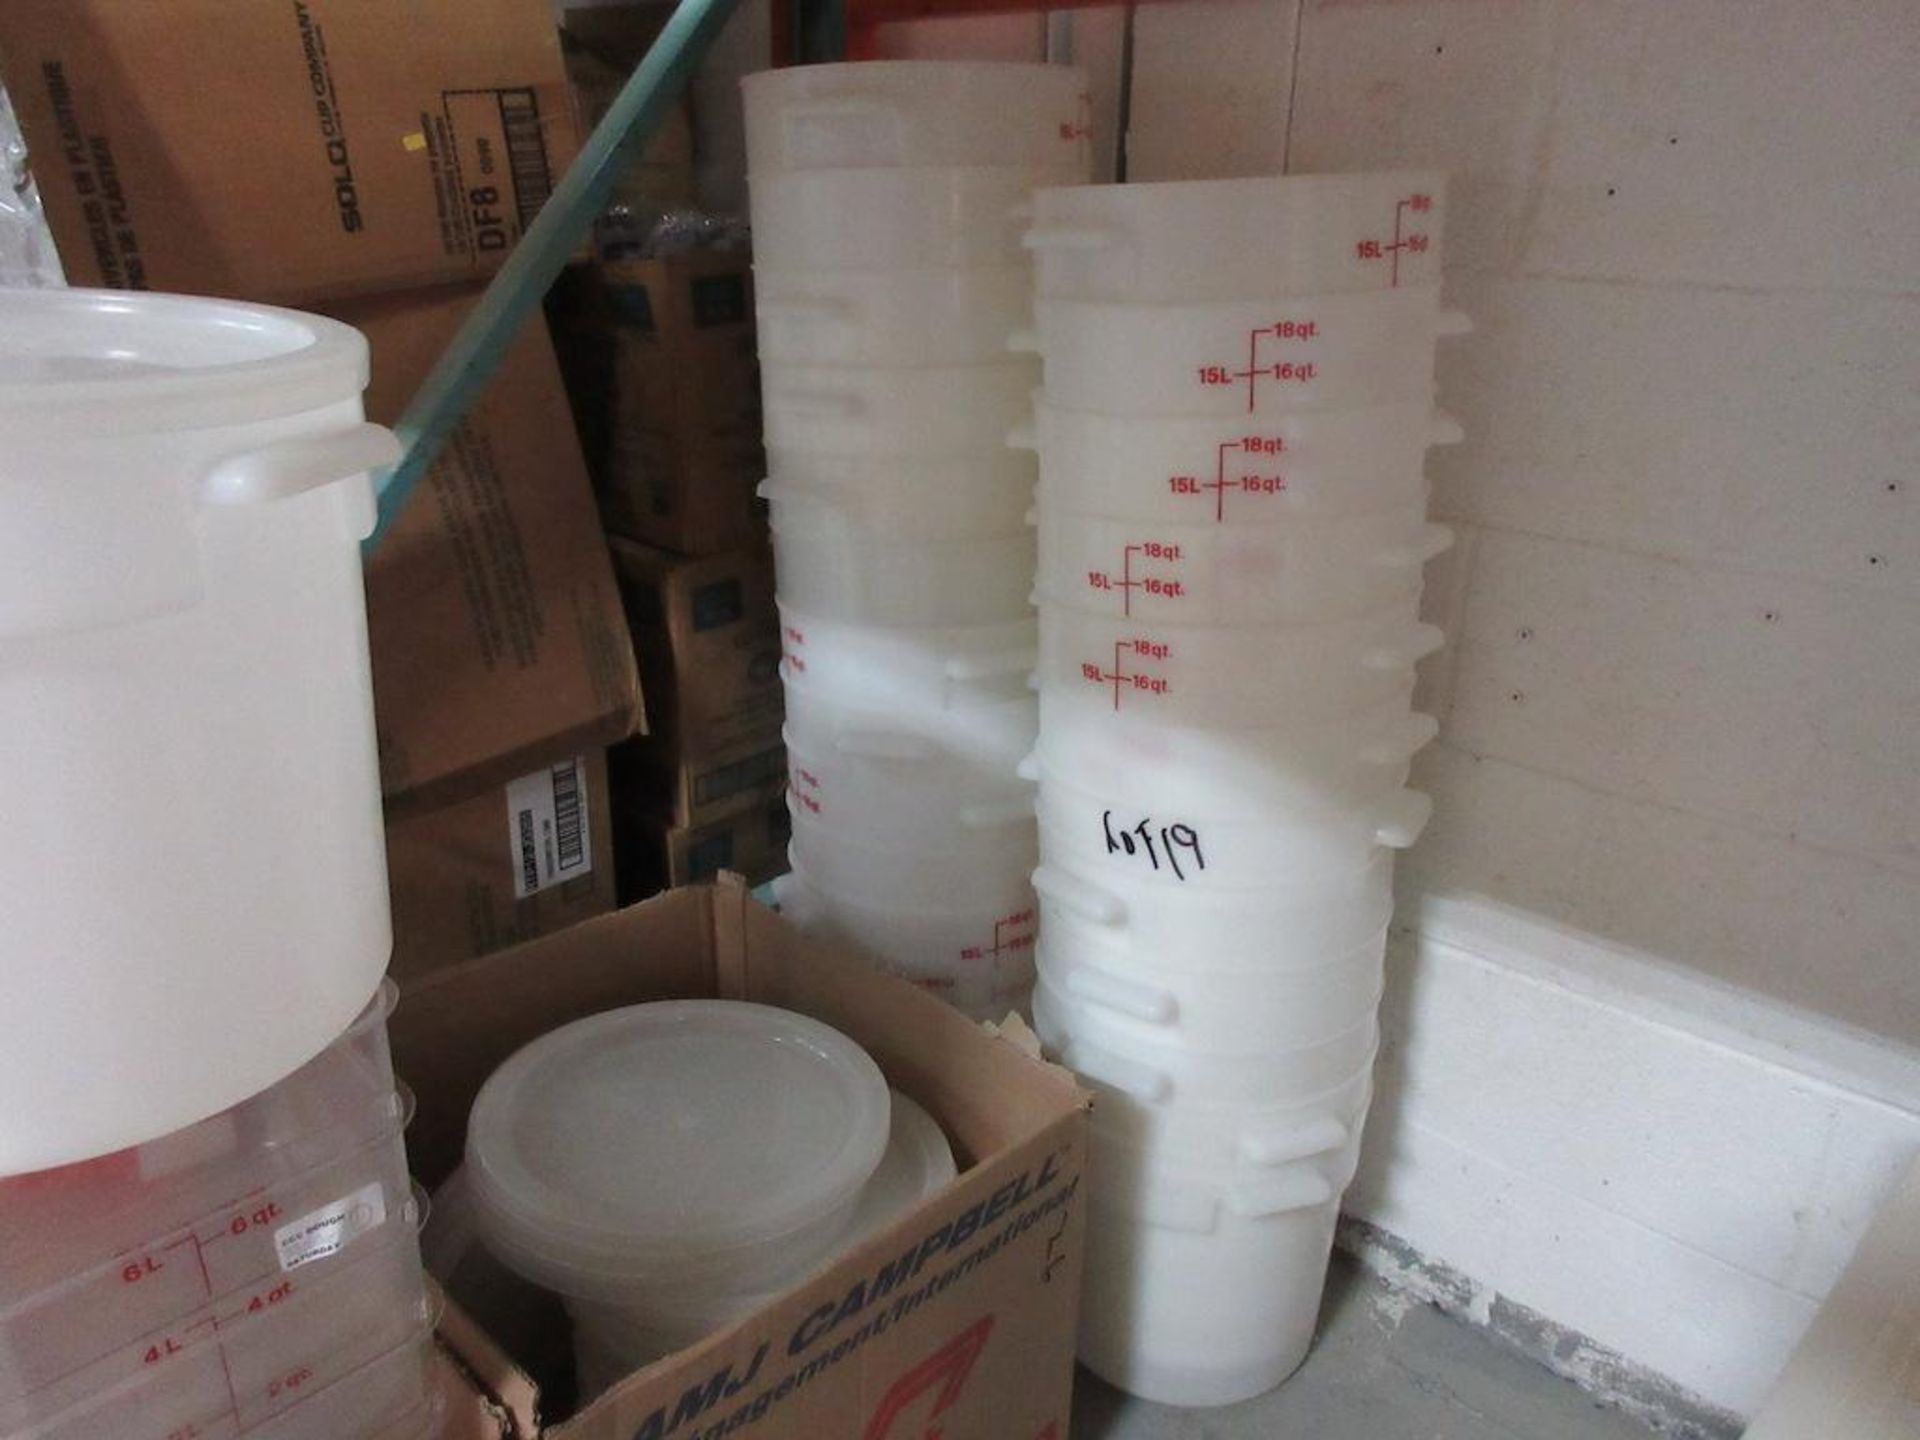 Lot asst. 26 plastic 18 qt pails w lids, 25 plastic 6 qt containers w lids - Image 5 of 5